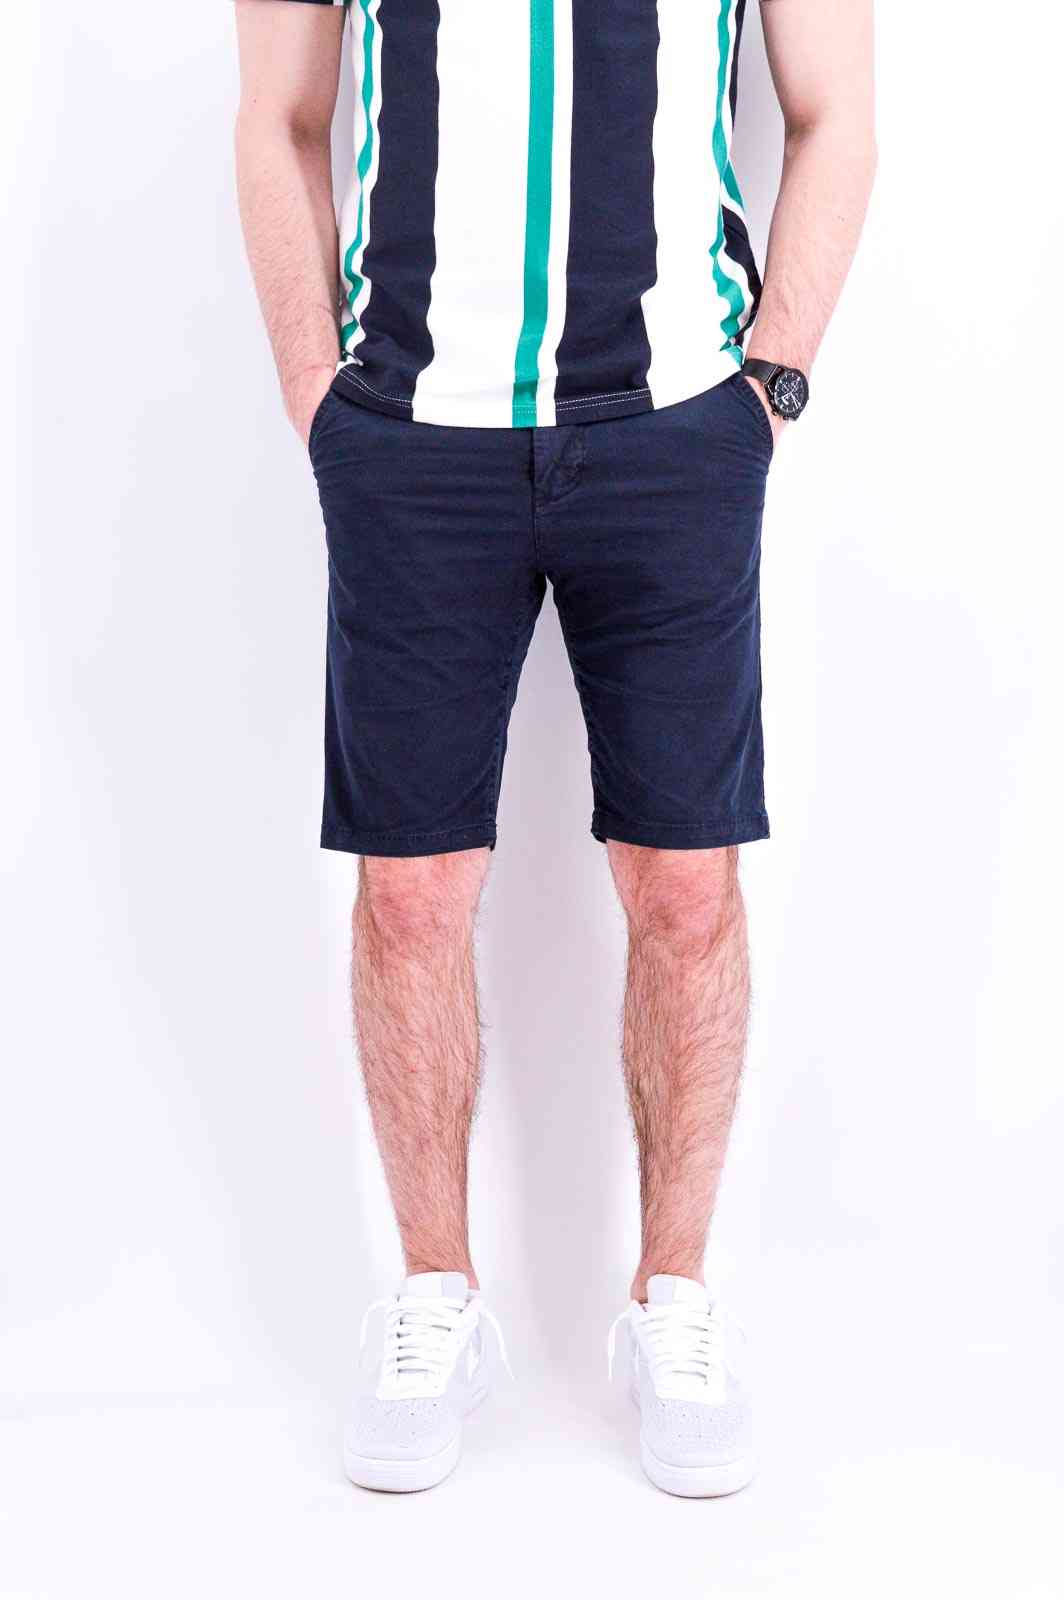 Les umes Shorts Classique Bermuda Chino Homme Stretch Confortable sans Pince Coupe Ajustée Shorts Styles fondamentaux